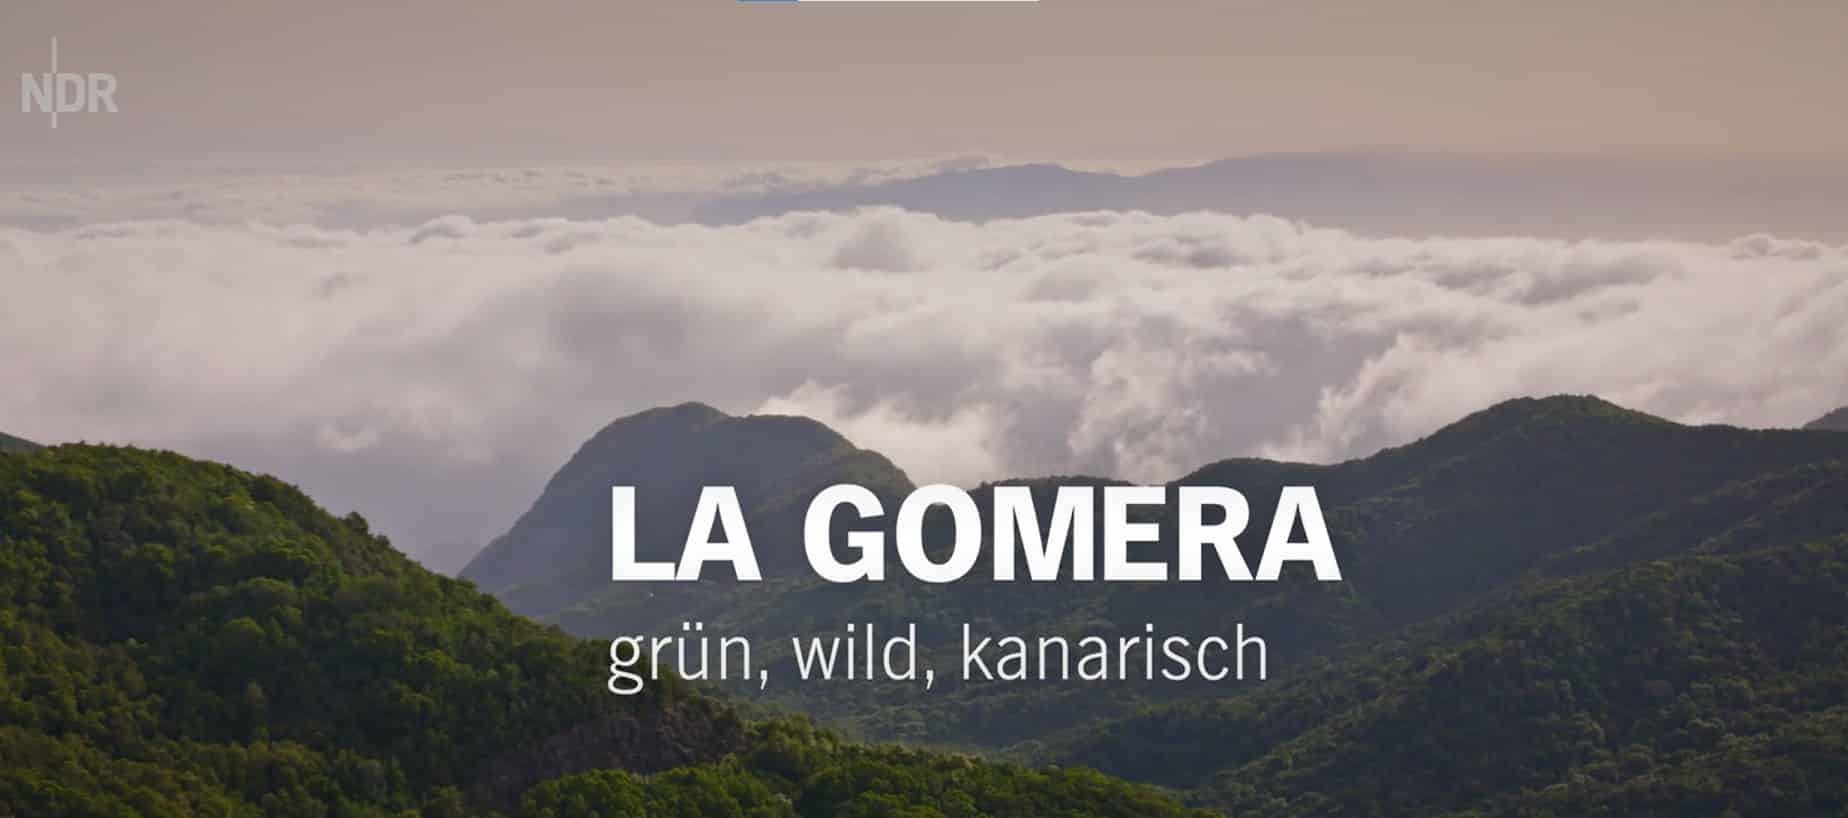 En este momento estás viendo La televisión pública alemana dedica un programa a los valores naturales y patrimoniales de La Gomera